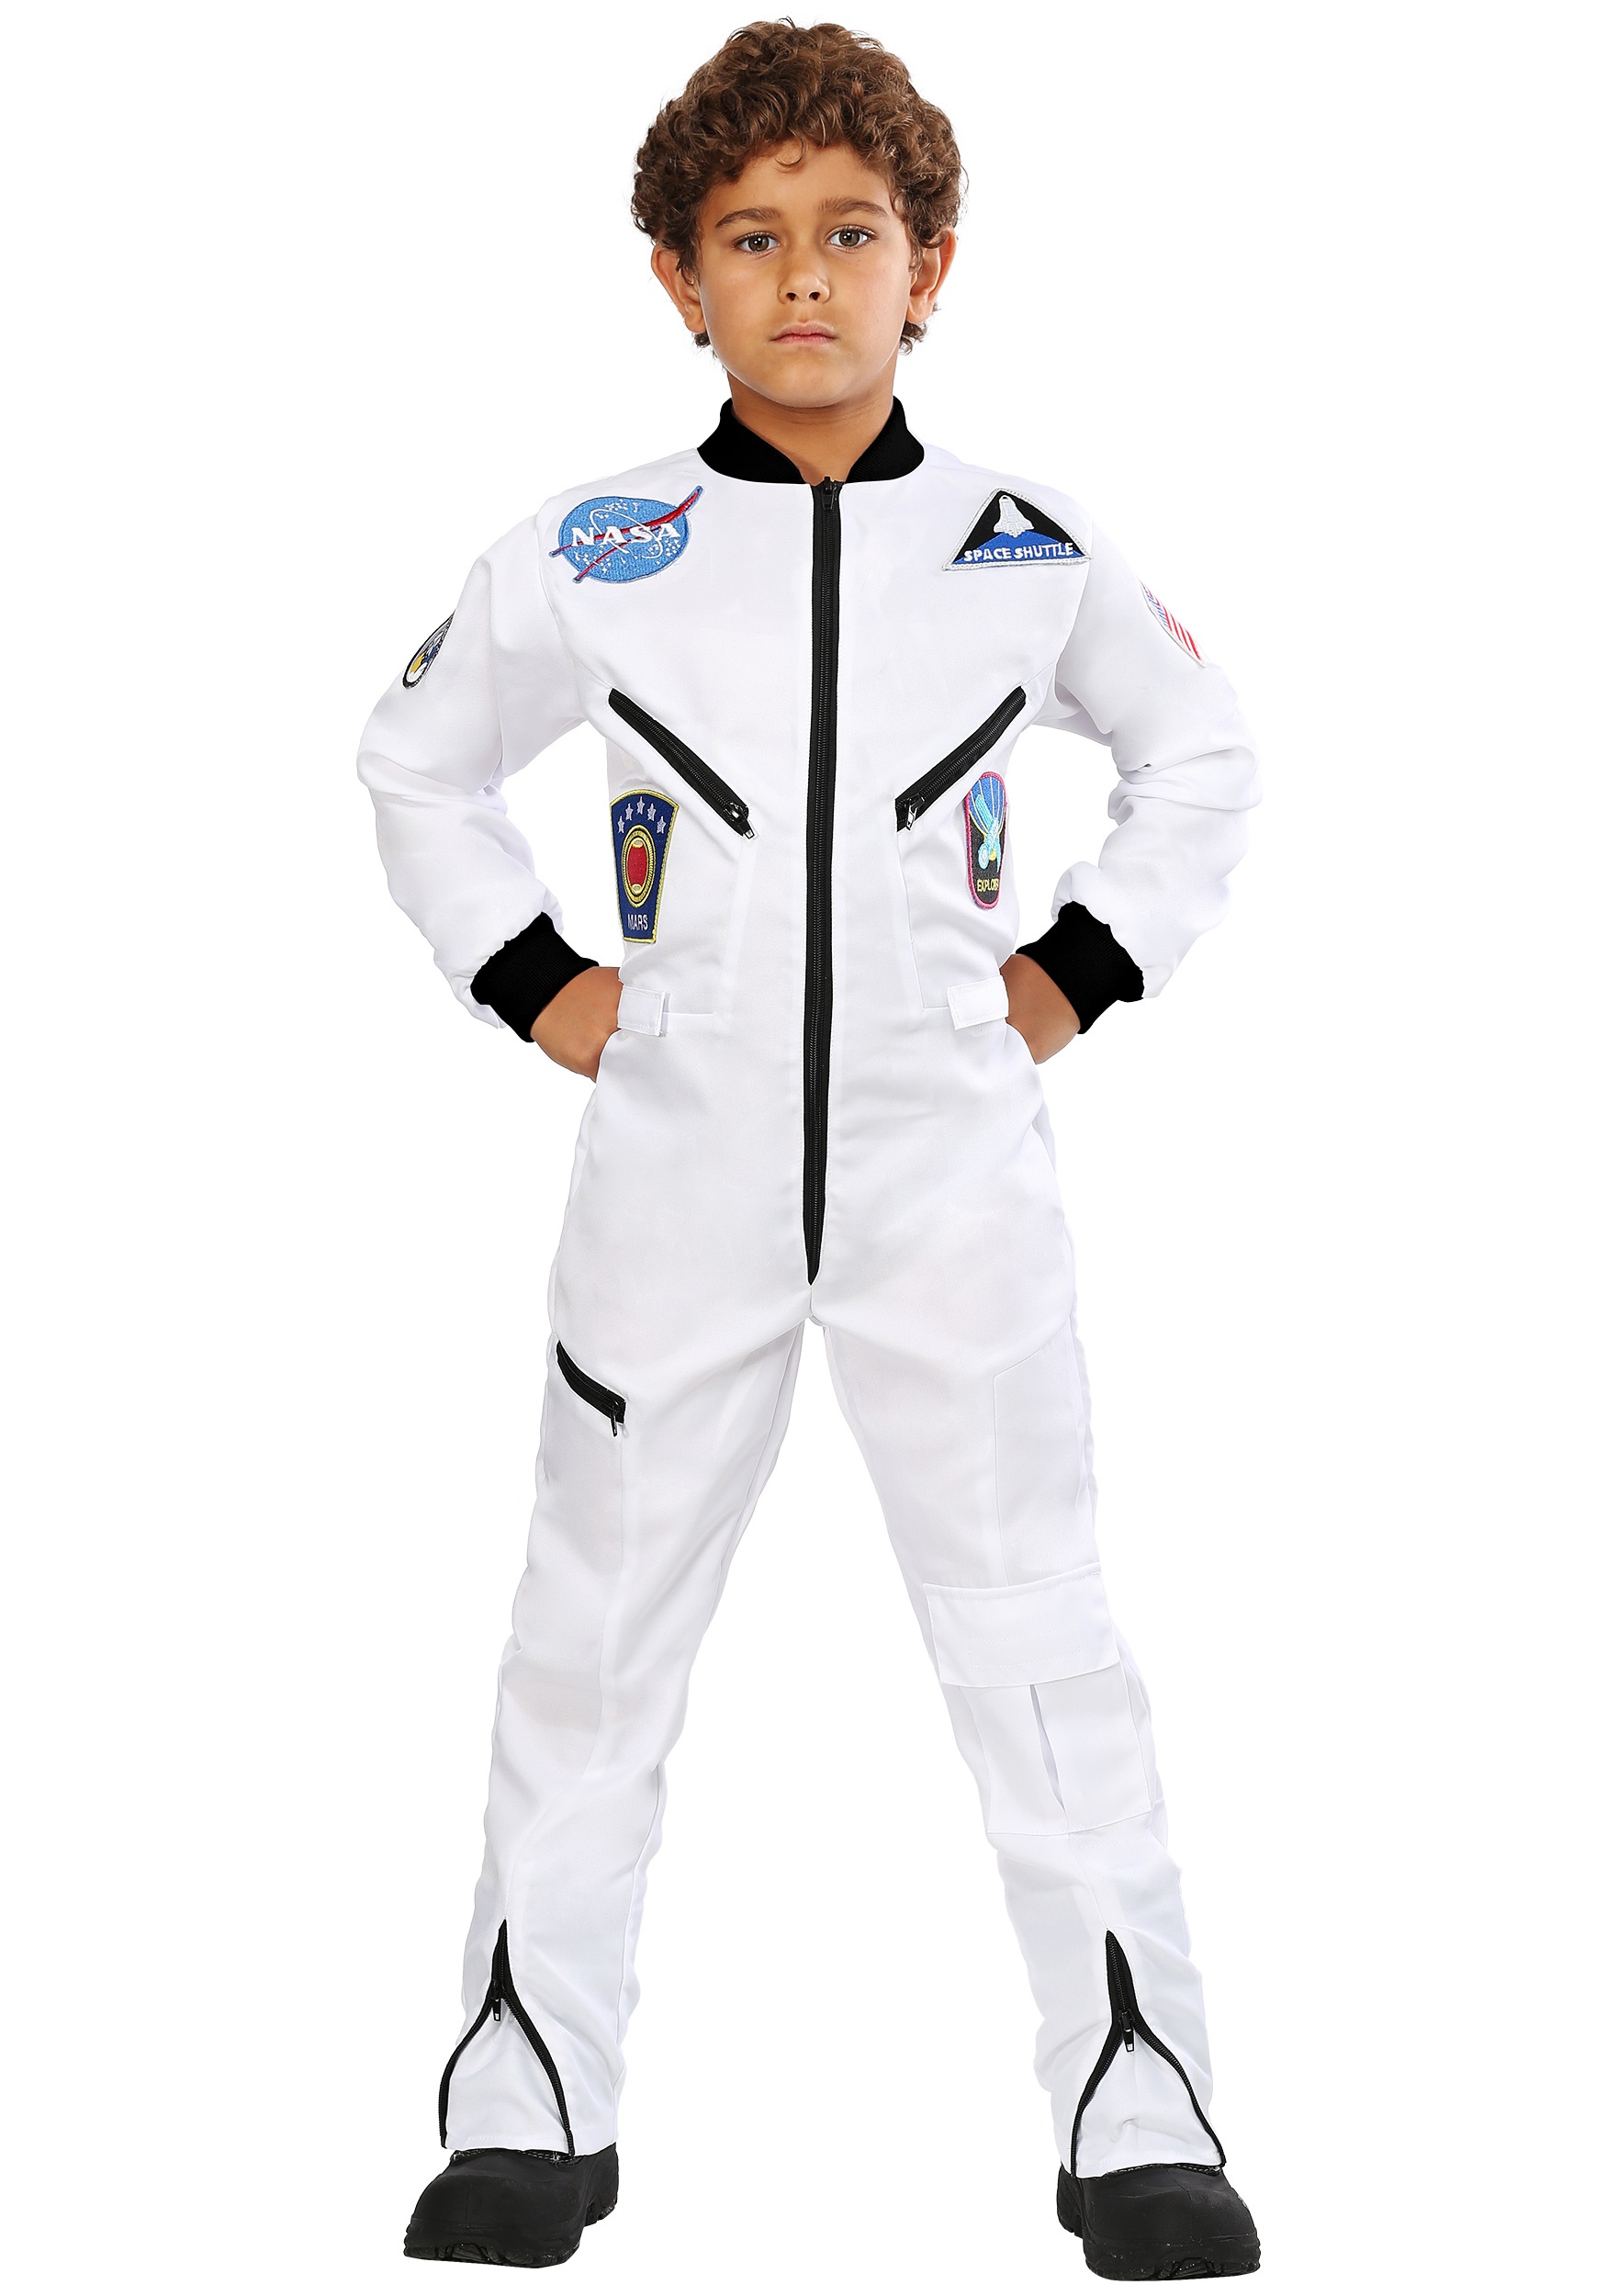 Photos - Fancy Dress FUN Costumes Astronaut Jumpsuit Costume for Children | Uniform Costumes Bl